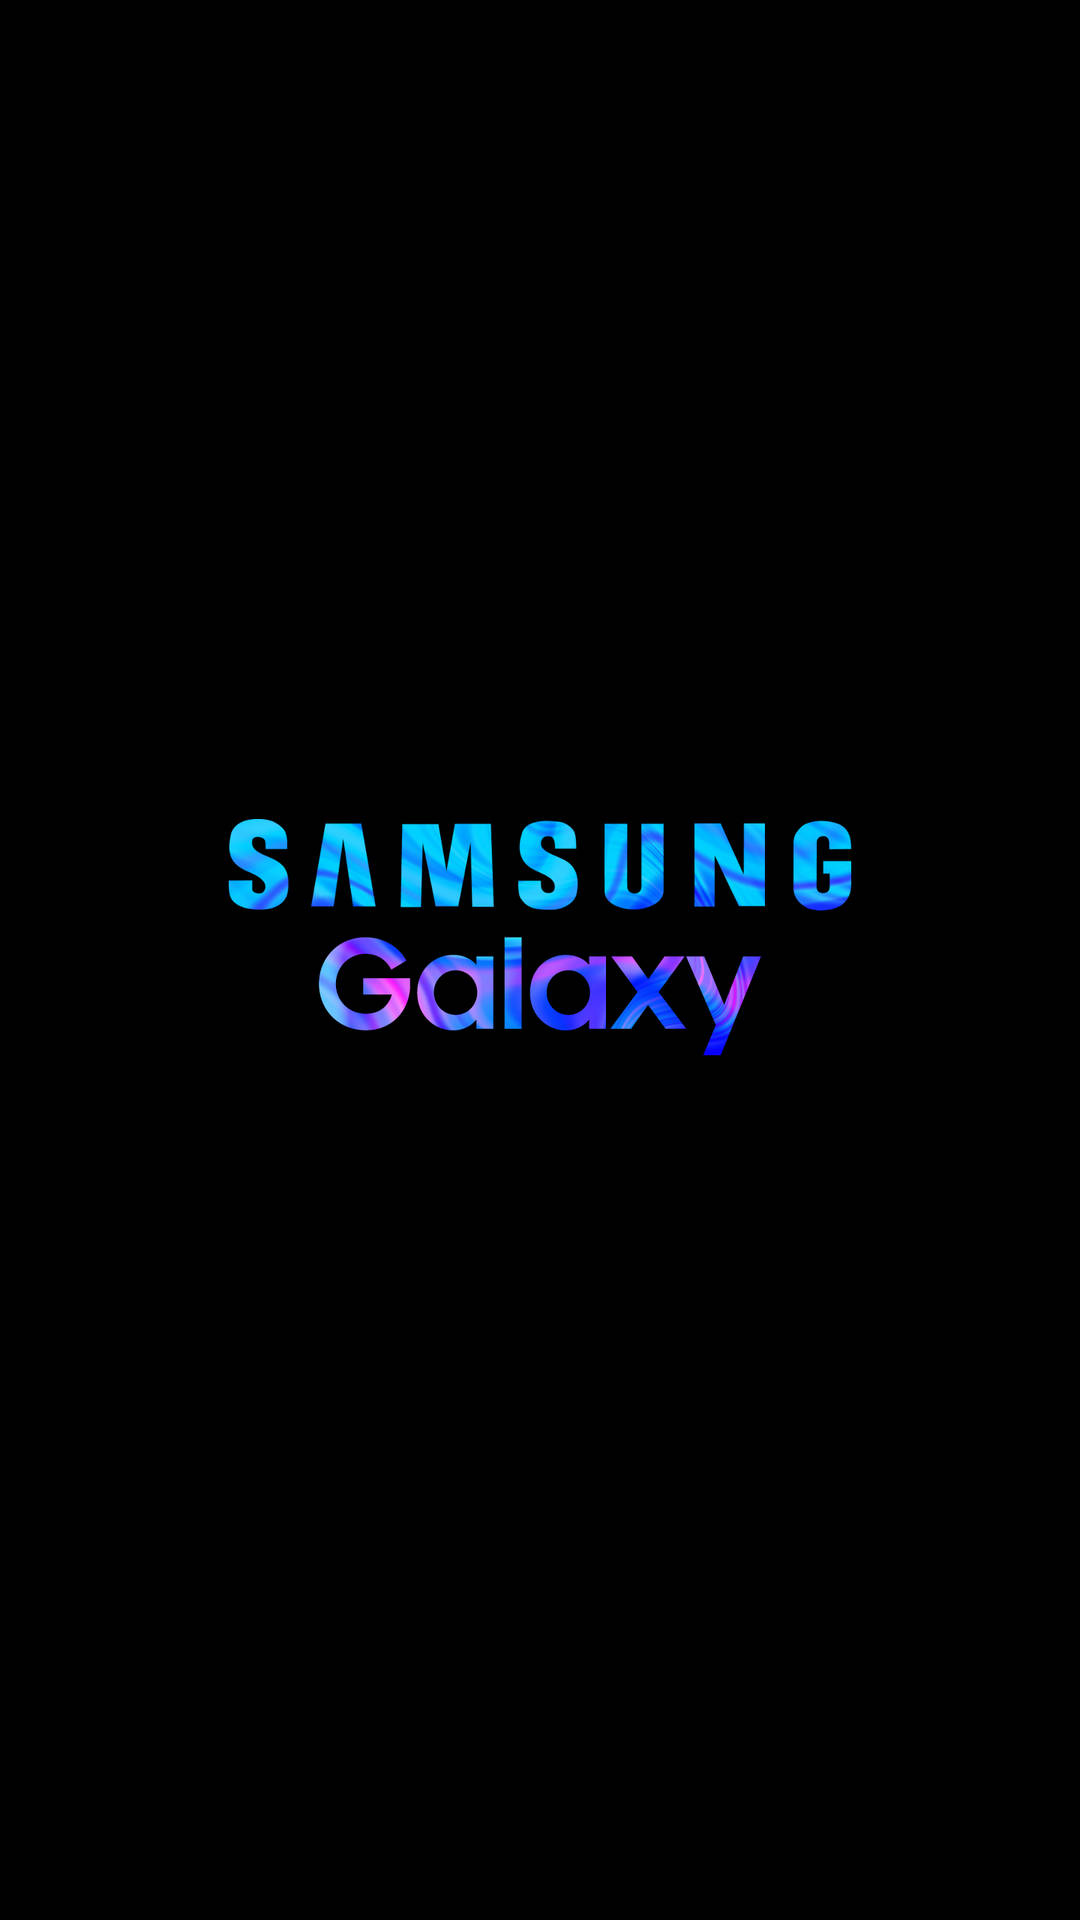 Samsung Mobile Galaxy Logo Wallpaper